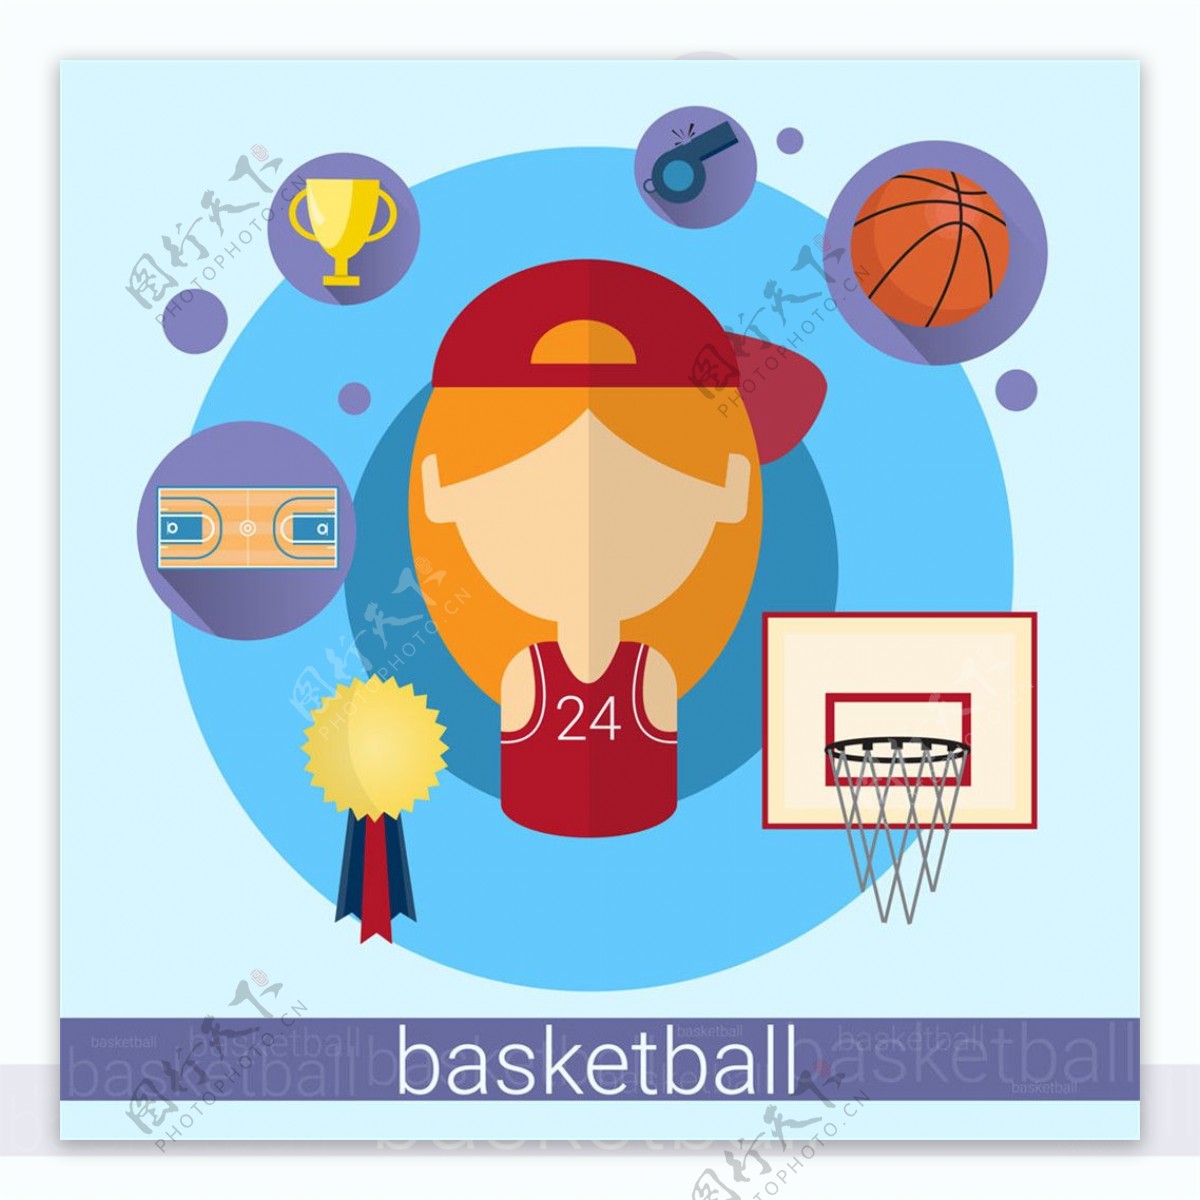 篮球运动员图标图片